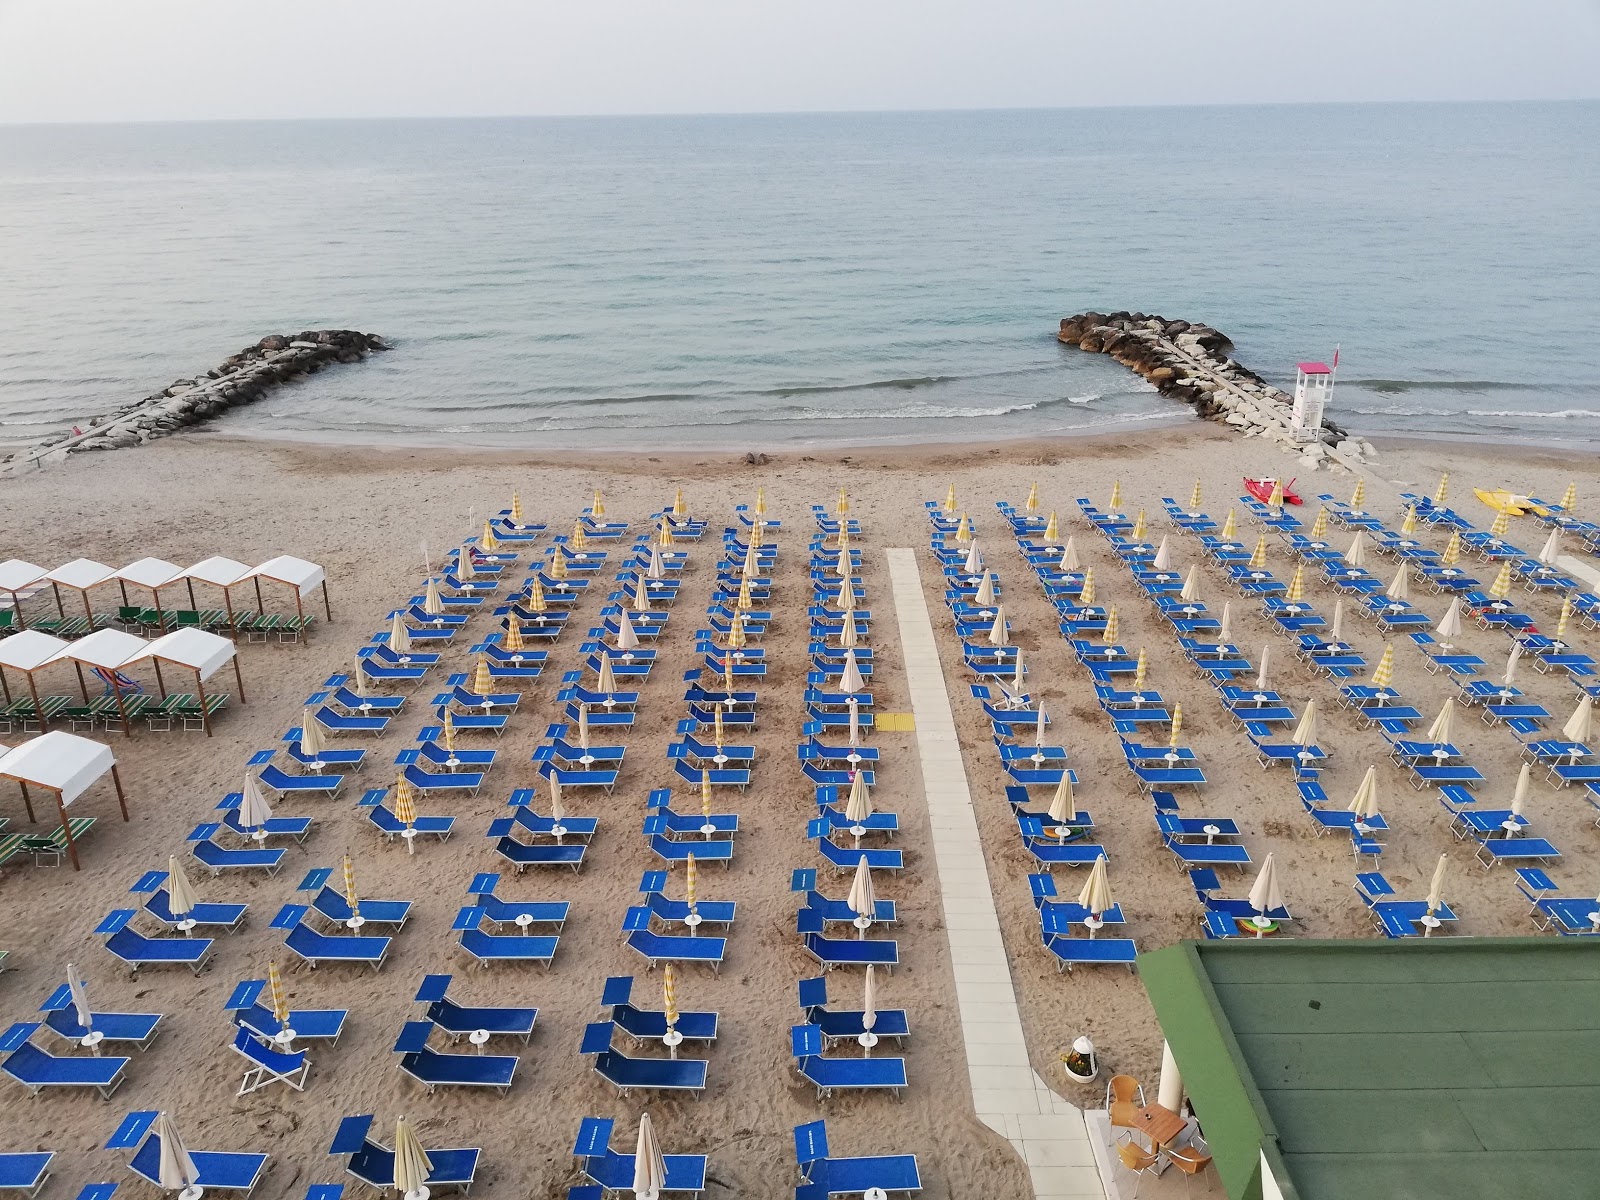 Zdjęcie Plaża Riviera Romagnola - popularne miejsce wśród znawców relaksu